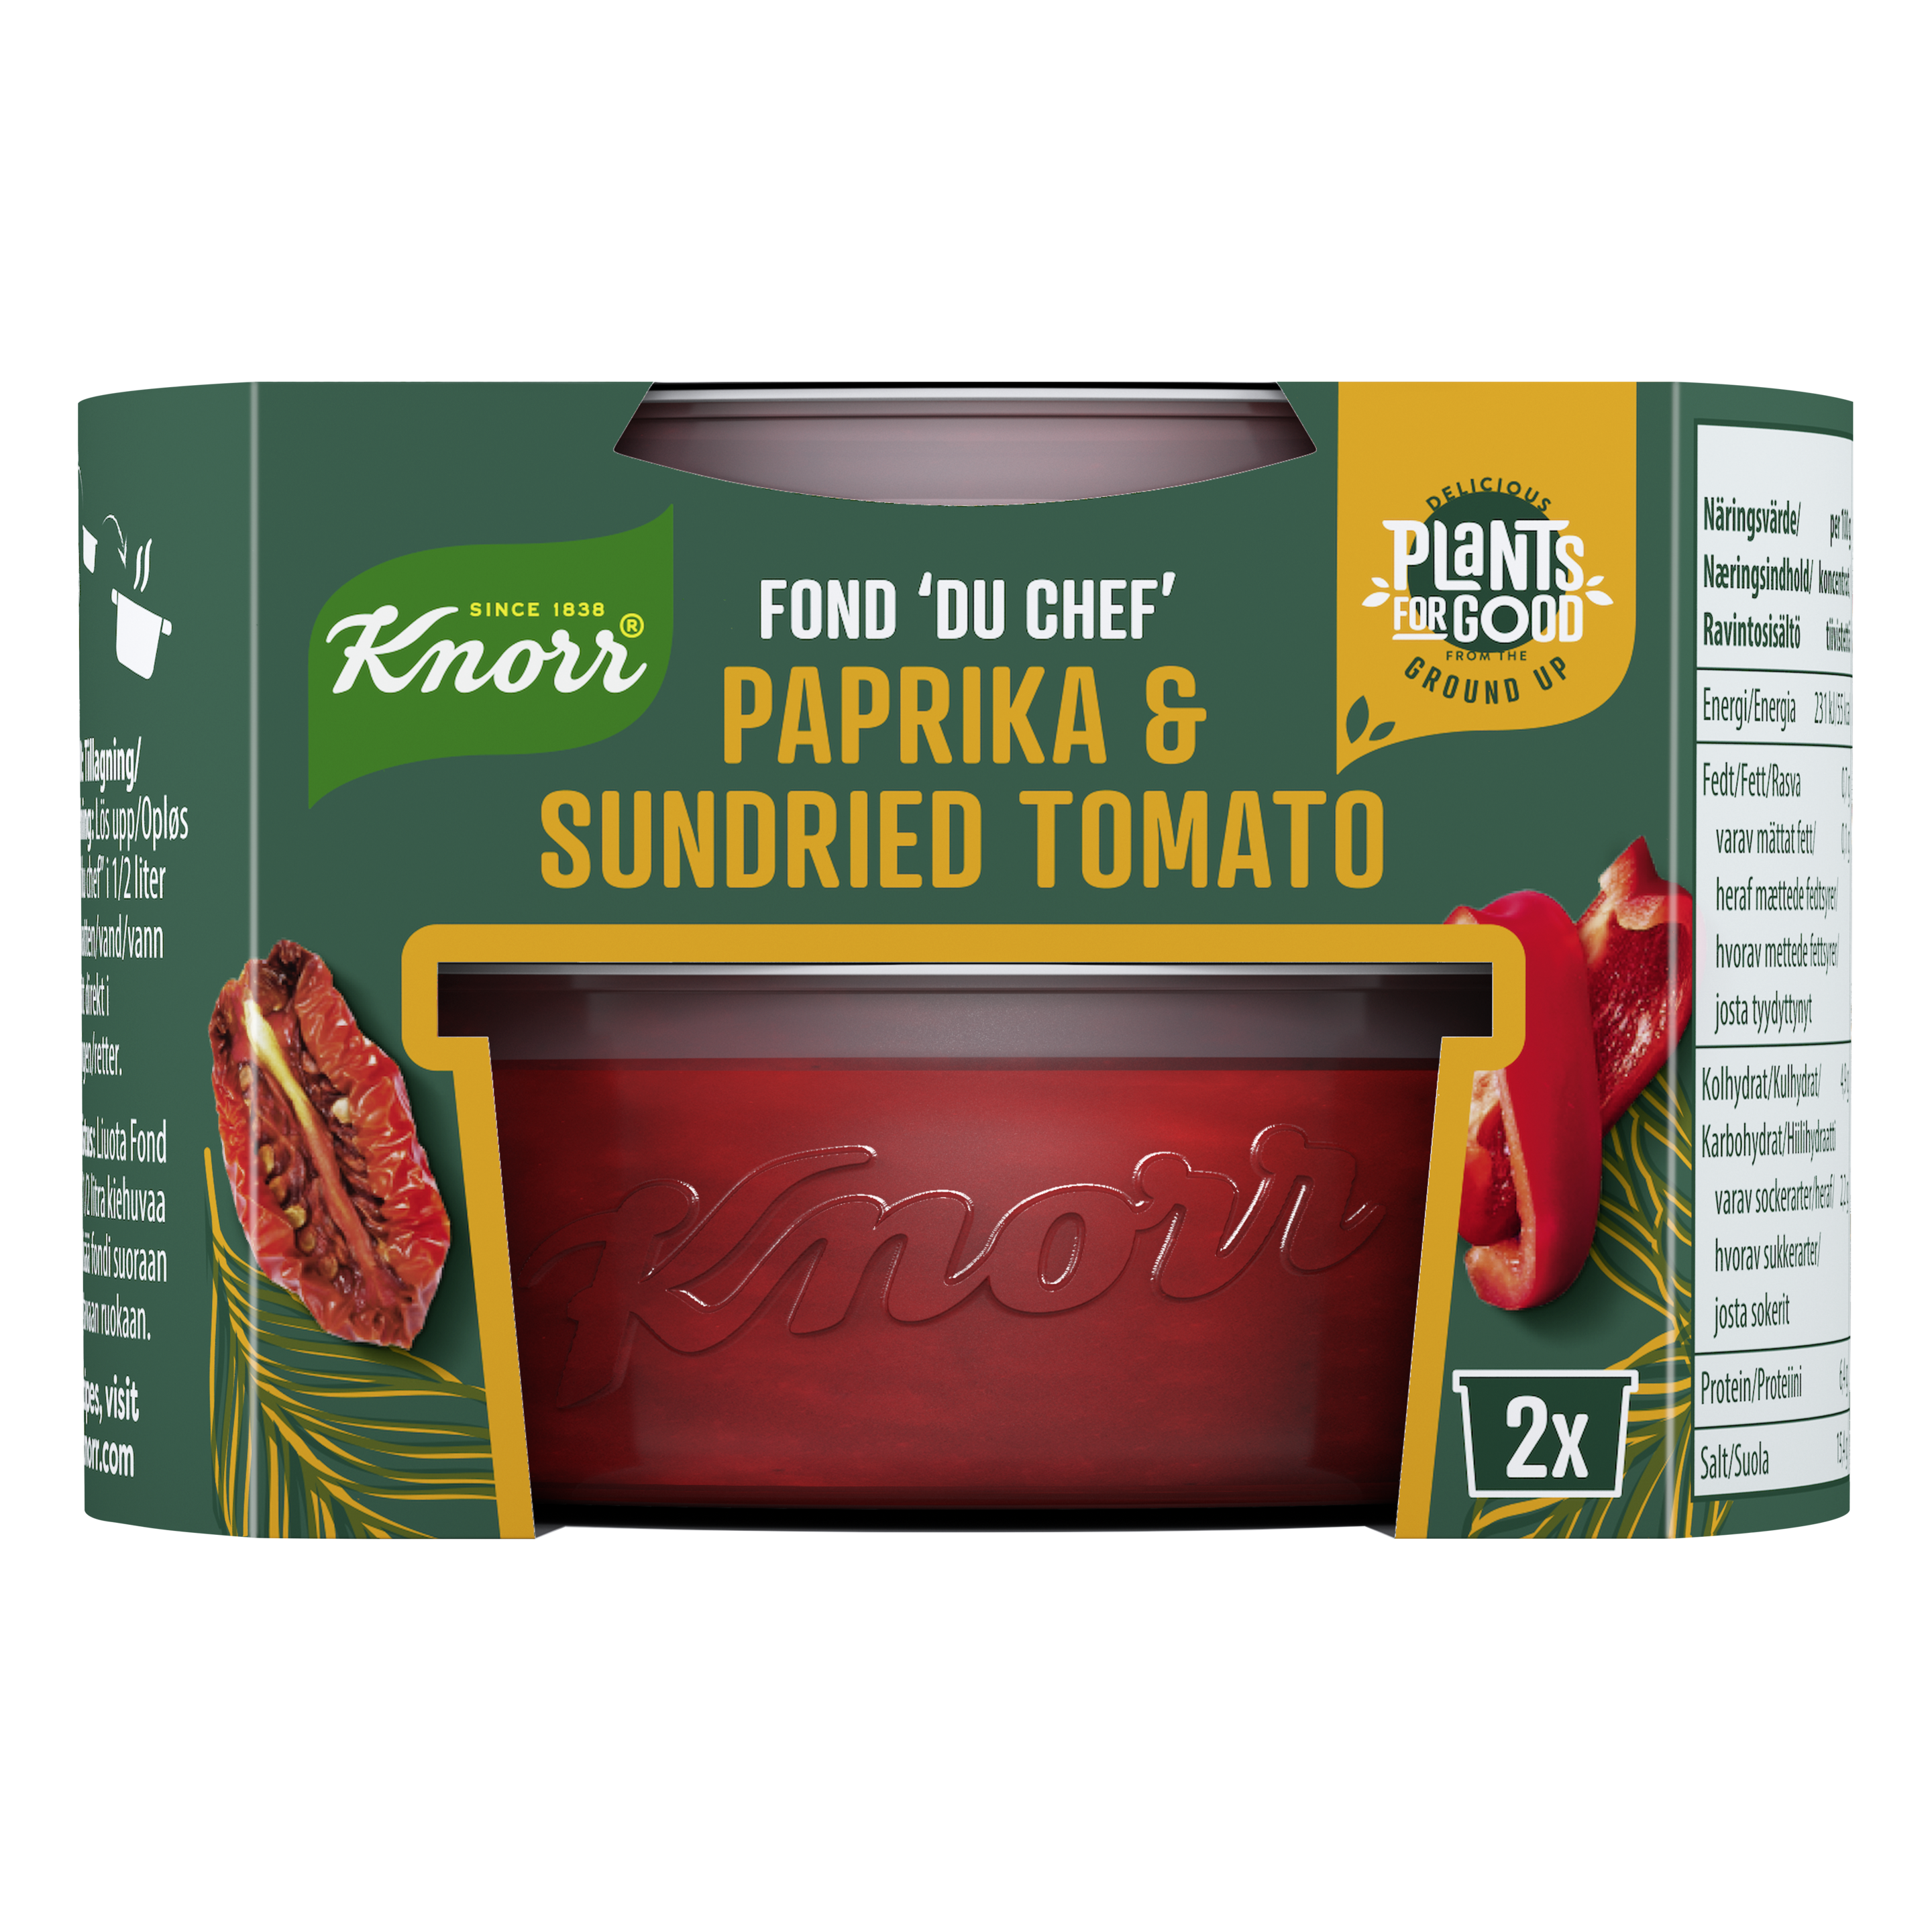 Fond du Chef Paprika & Sundried Tomato